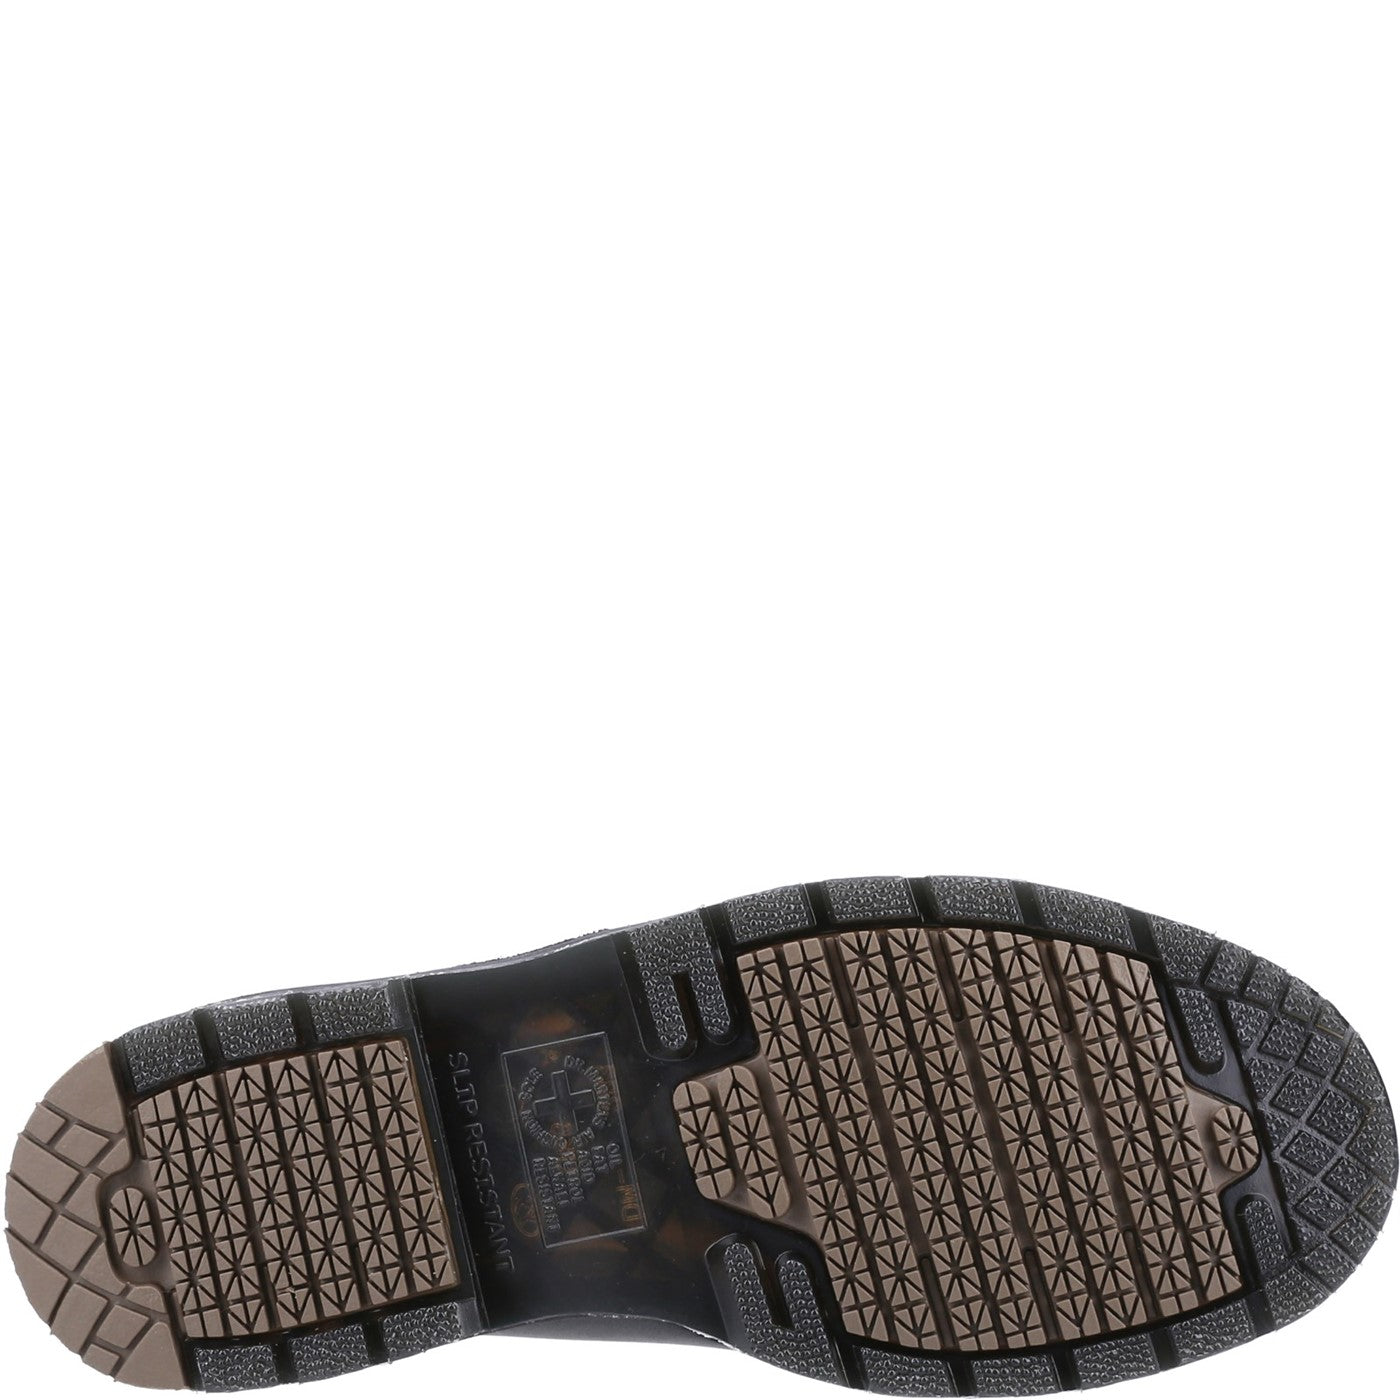 Men's Dr Martens 1461 Mono Slip Resistant Leather Shoes